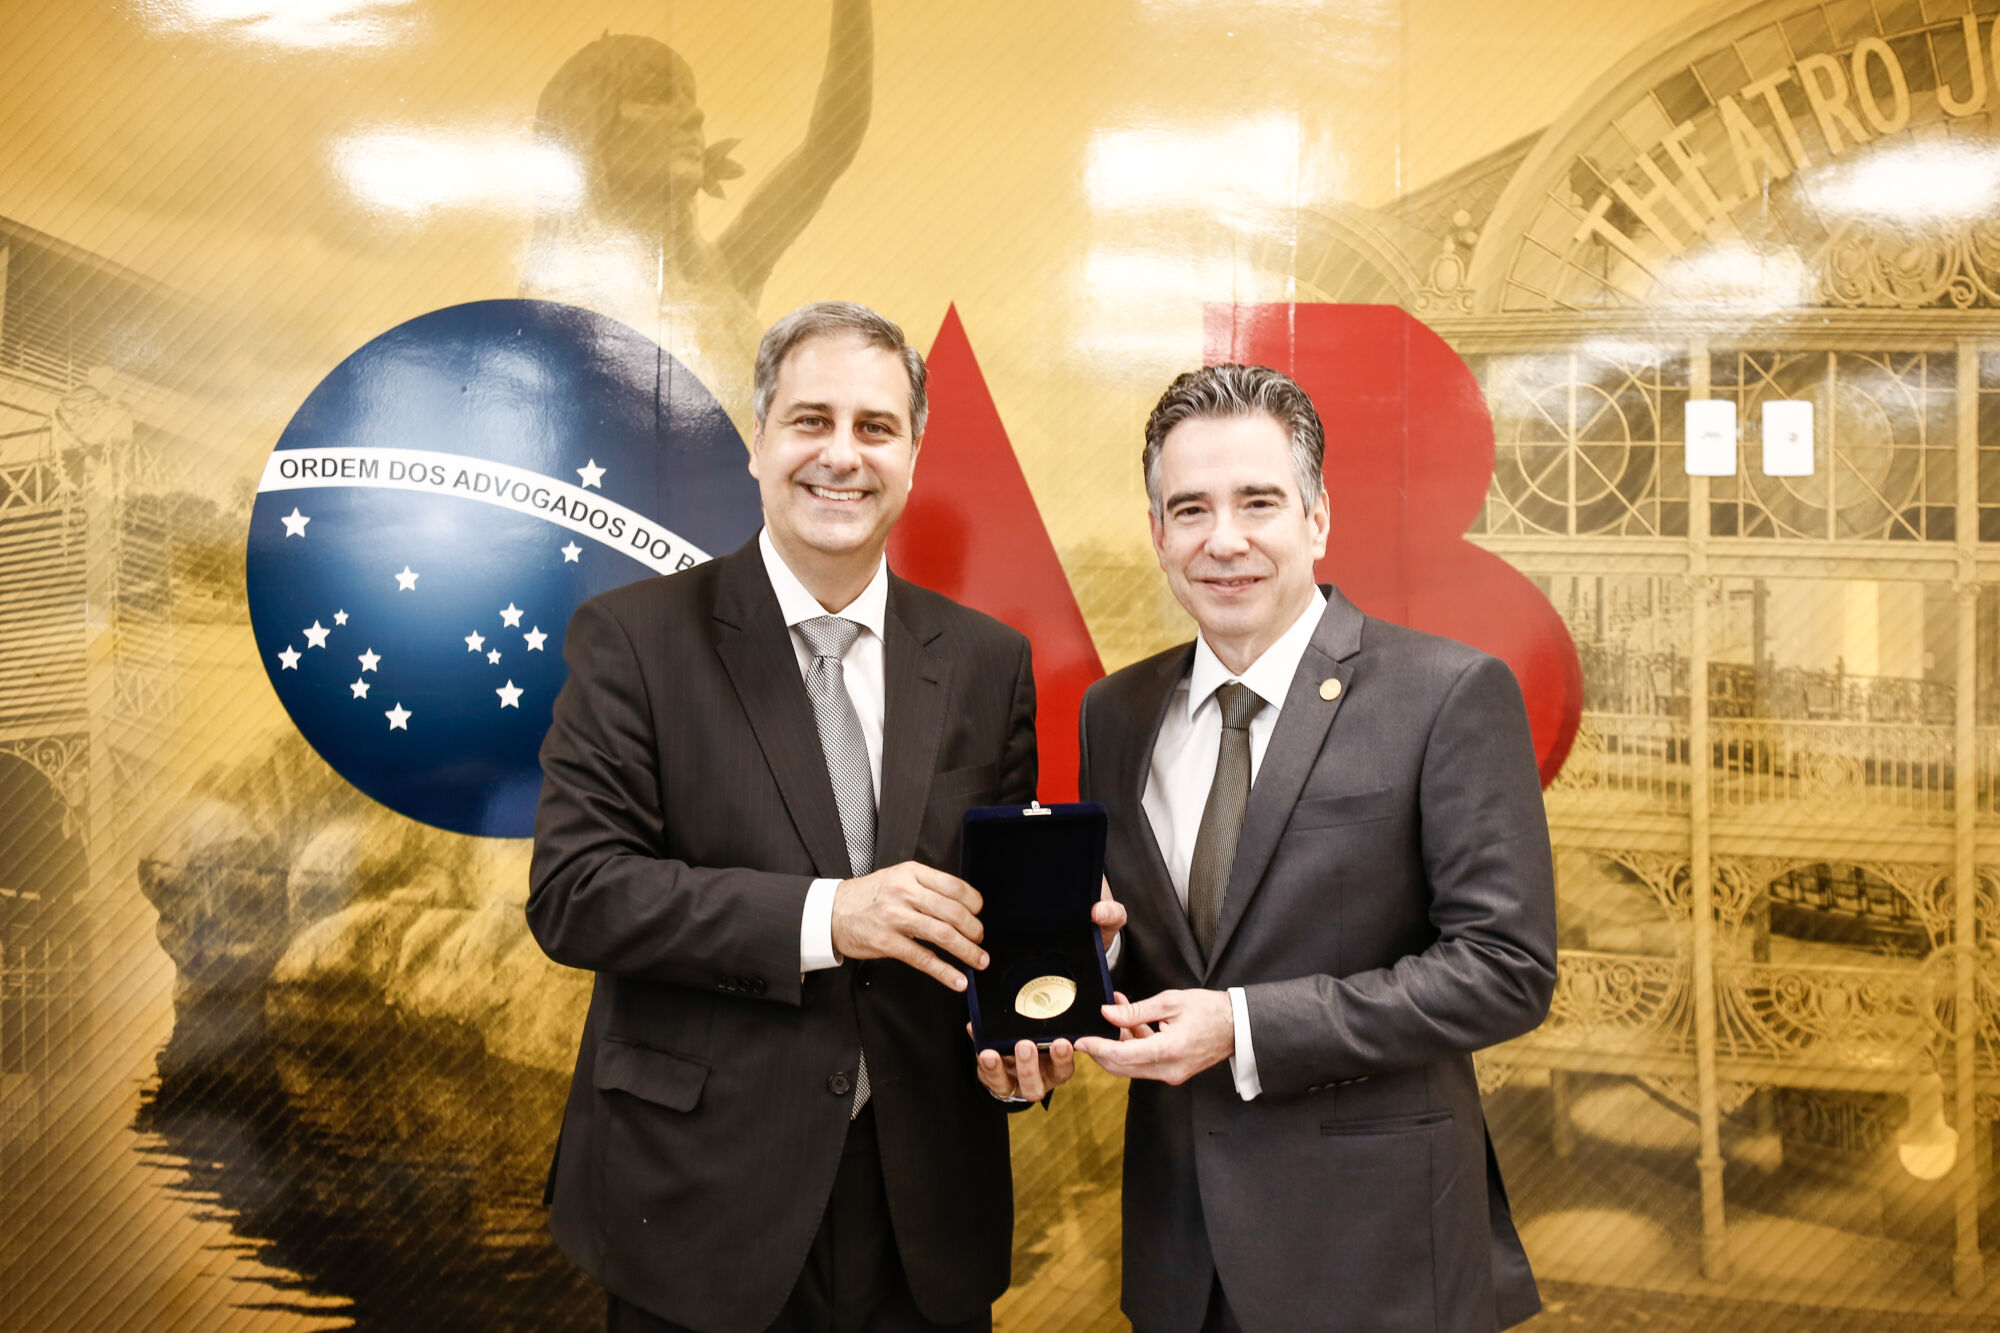 Proposto por vereador Afonso, advogado recebe Medalha de Ouro de Manaus